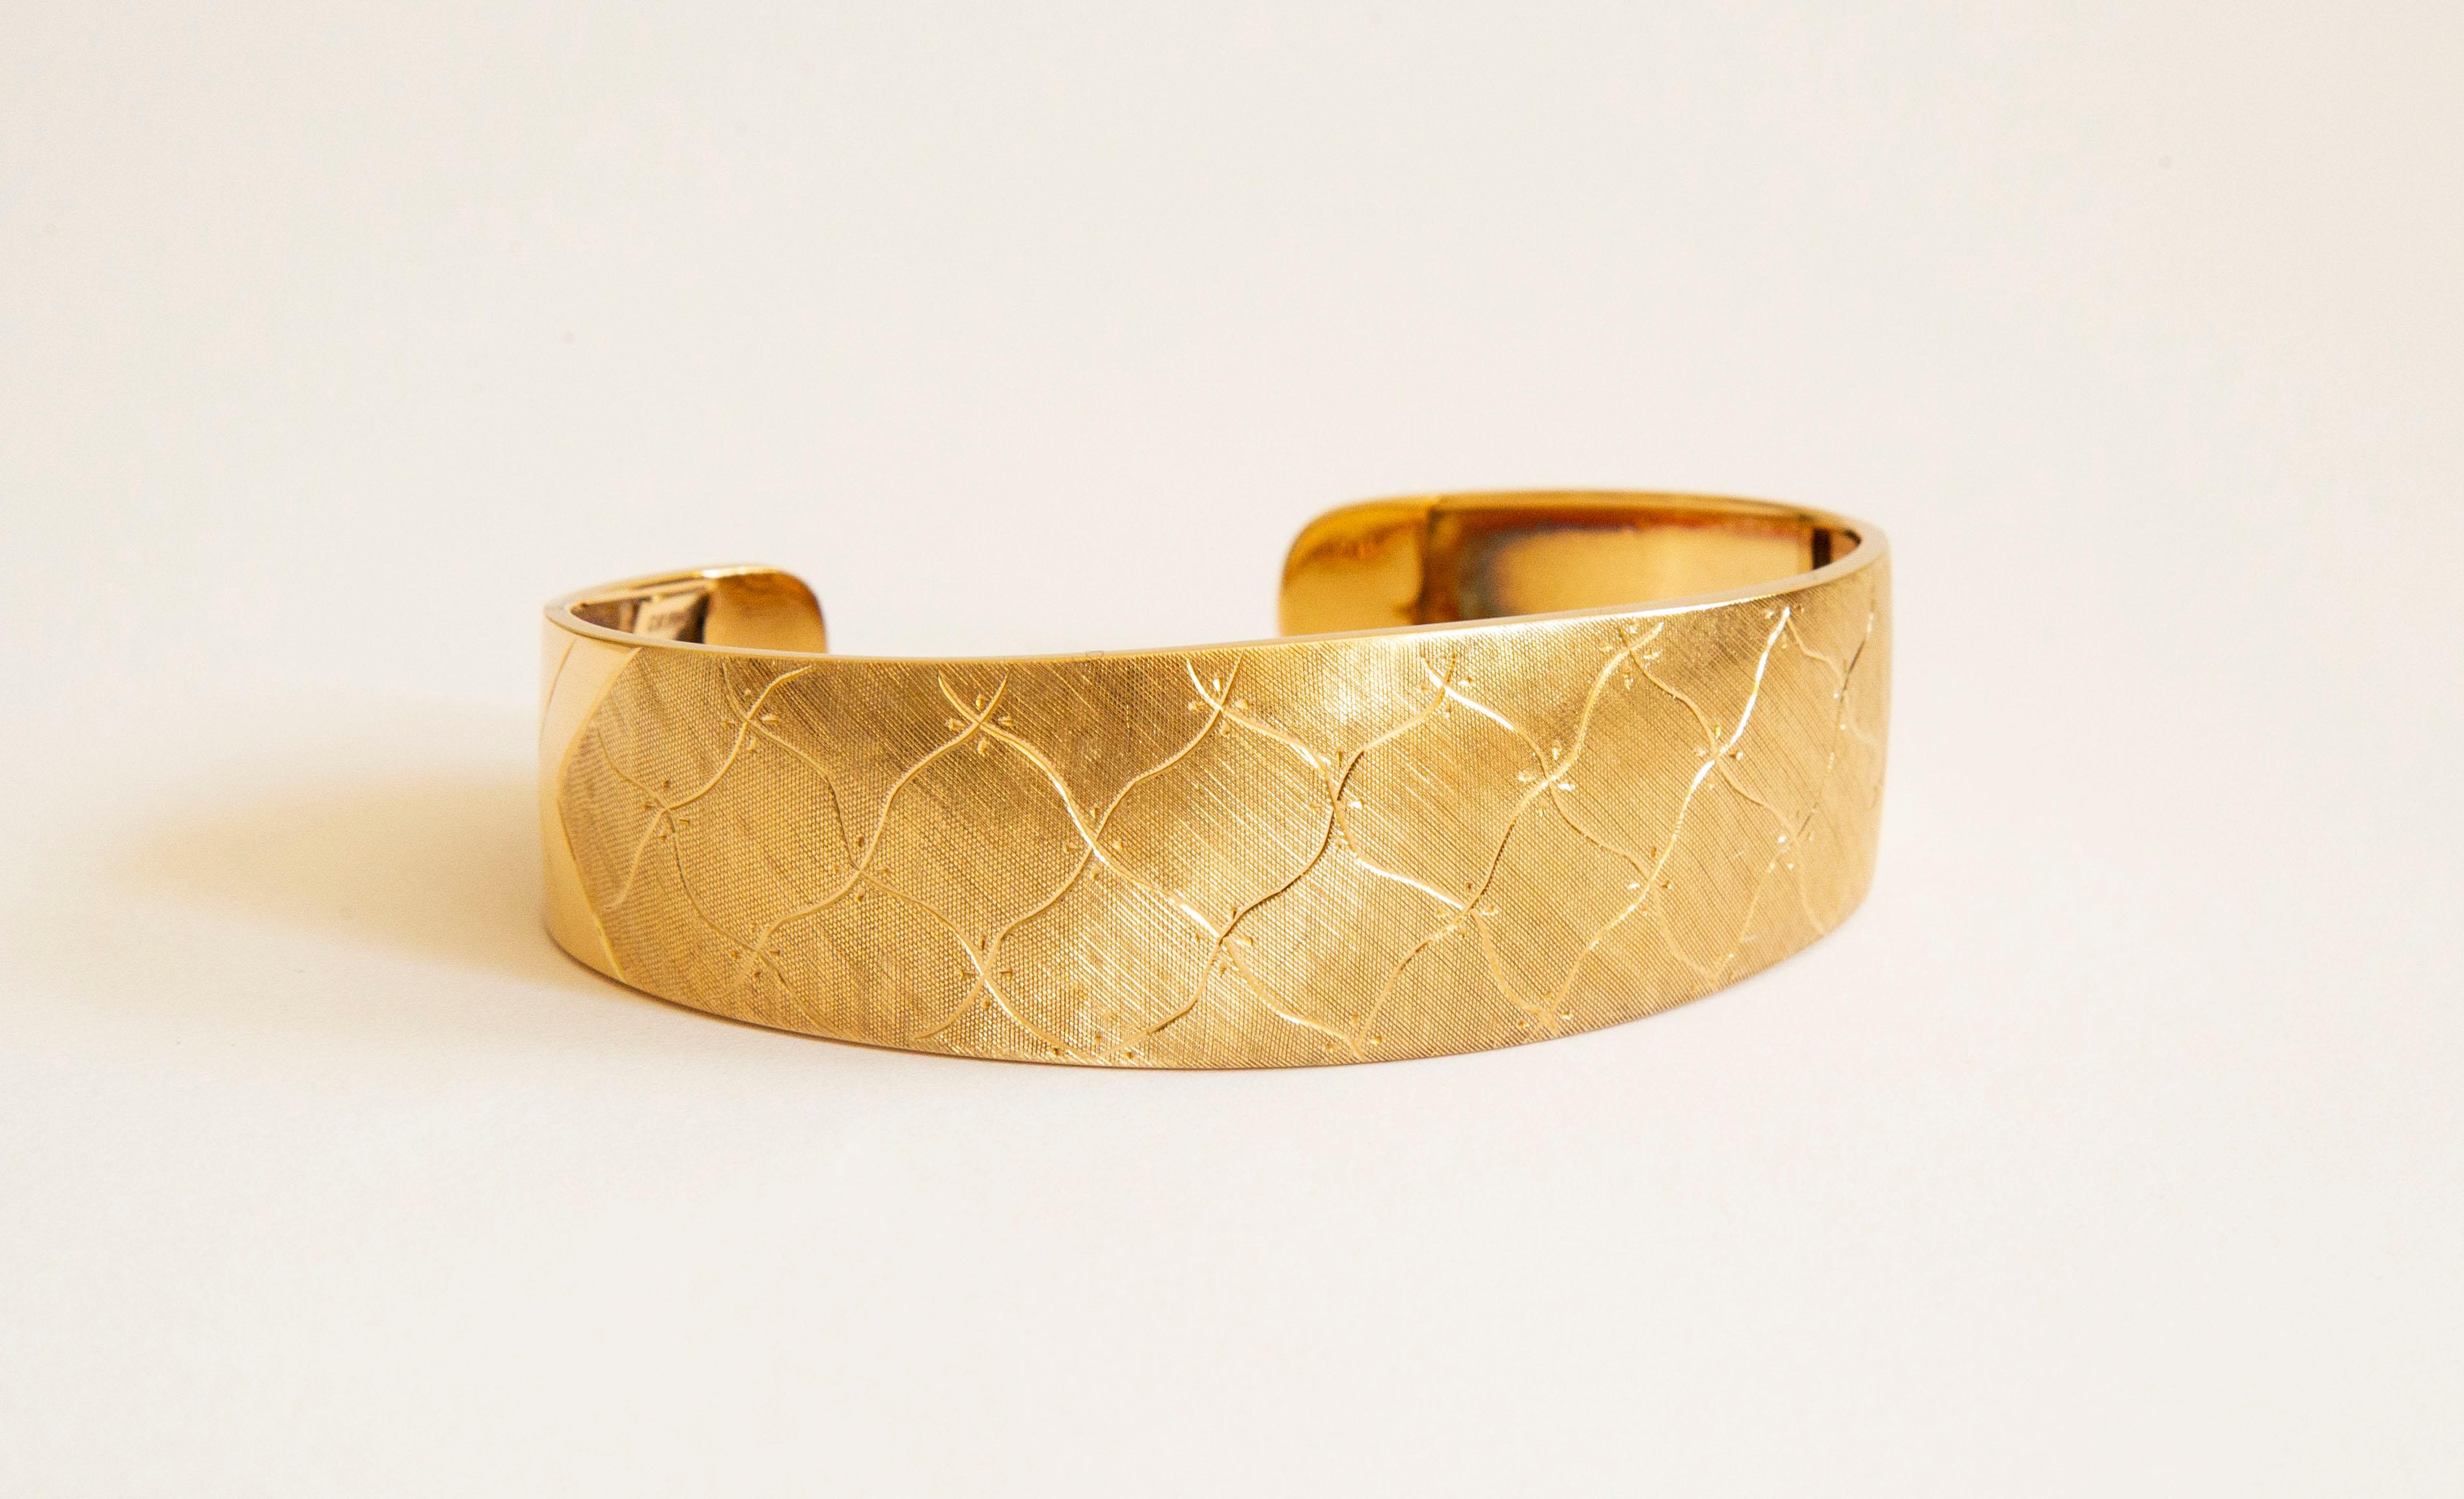 Un bracelet manchette vintage en or jaune 18 carats. Le bracelet est gravé d'un motif abstrait et irrégulier de diamants et présente une finition satinée/mate. Le motif et la finition couvrent la partie supérieure et partiellement les parties